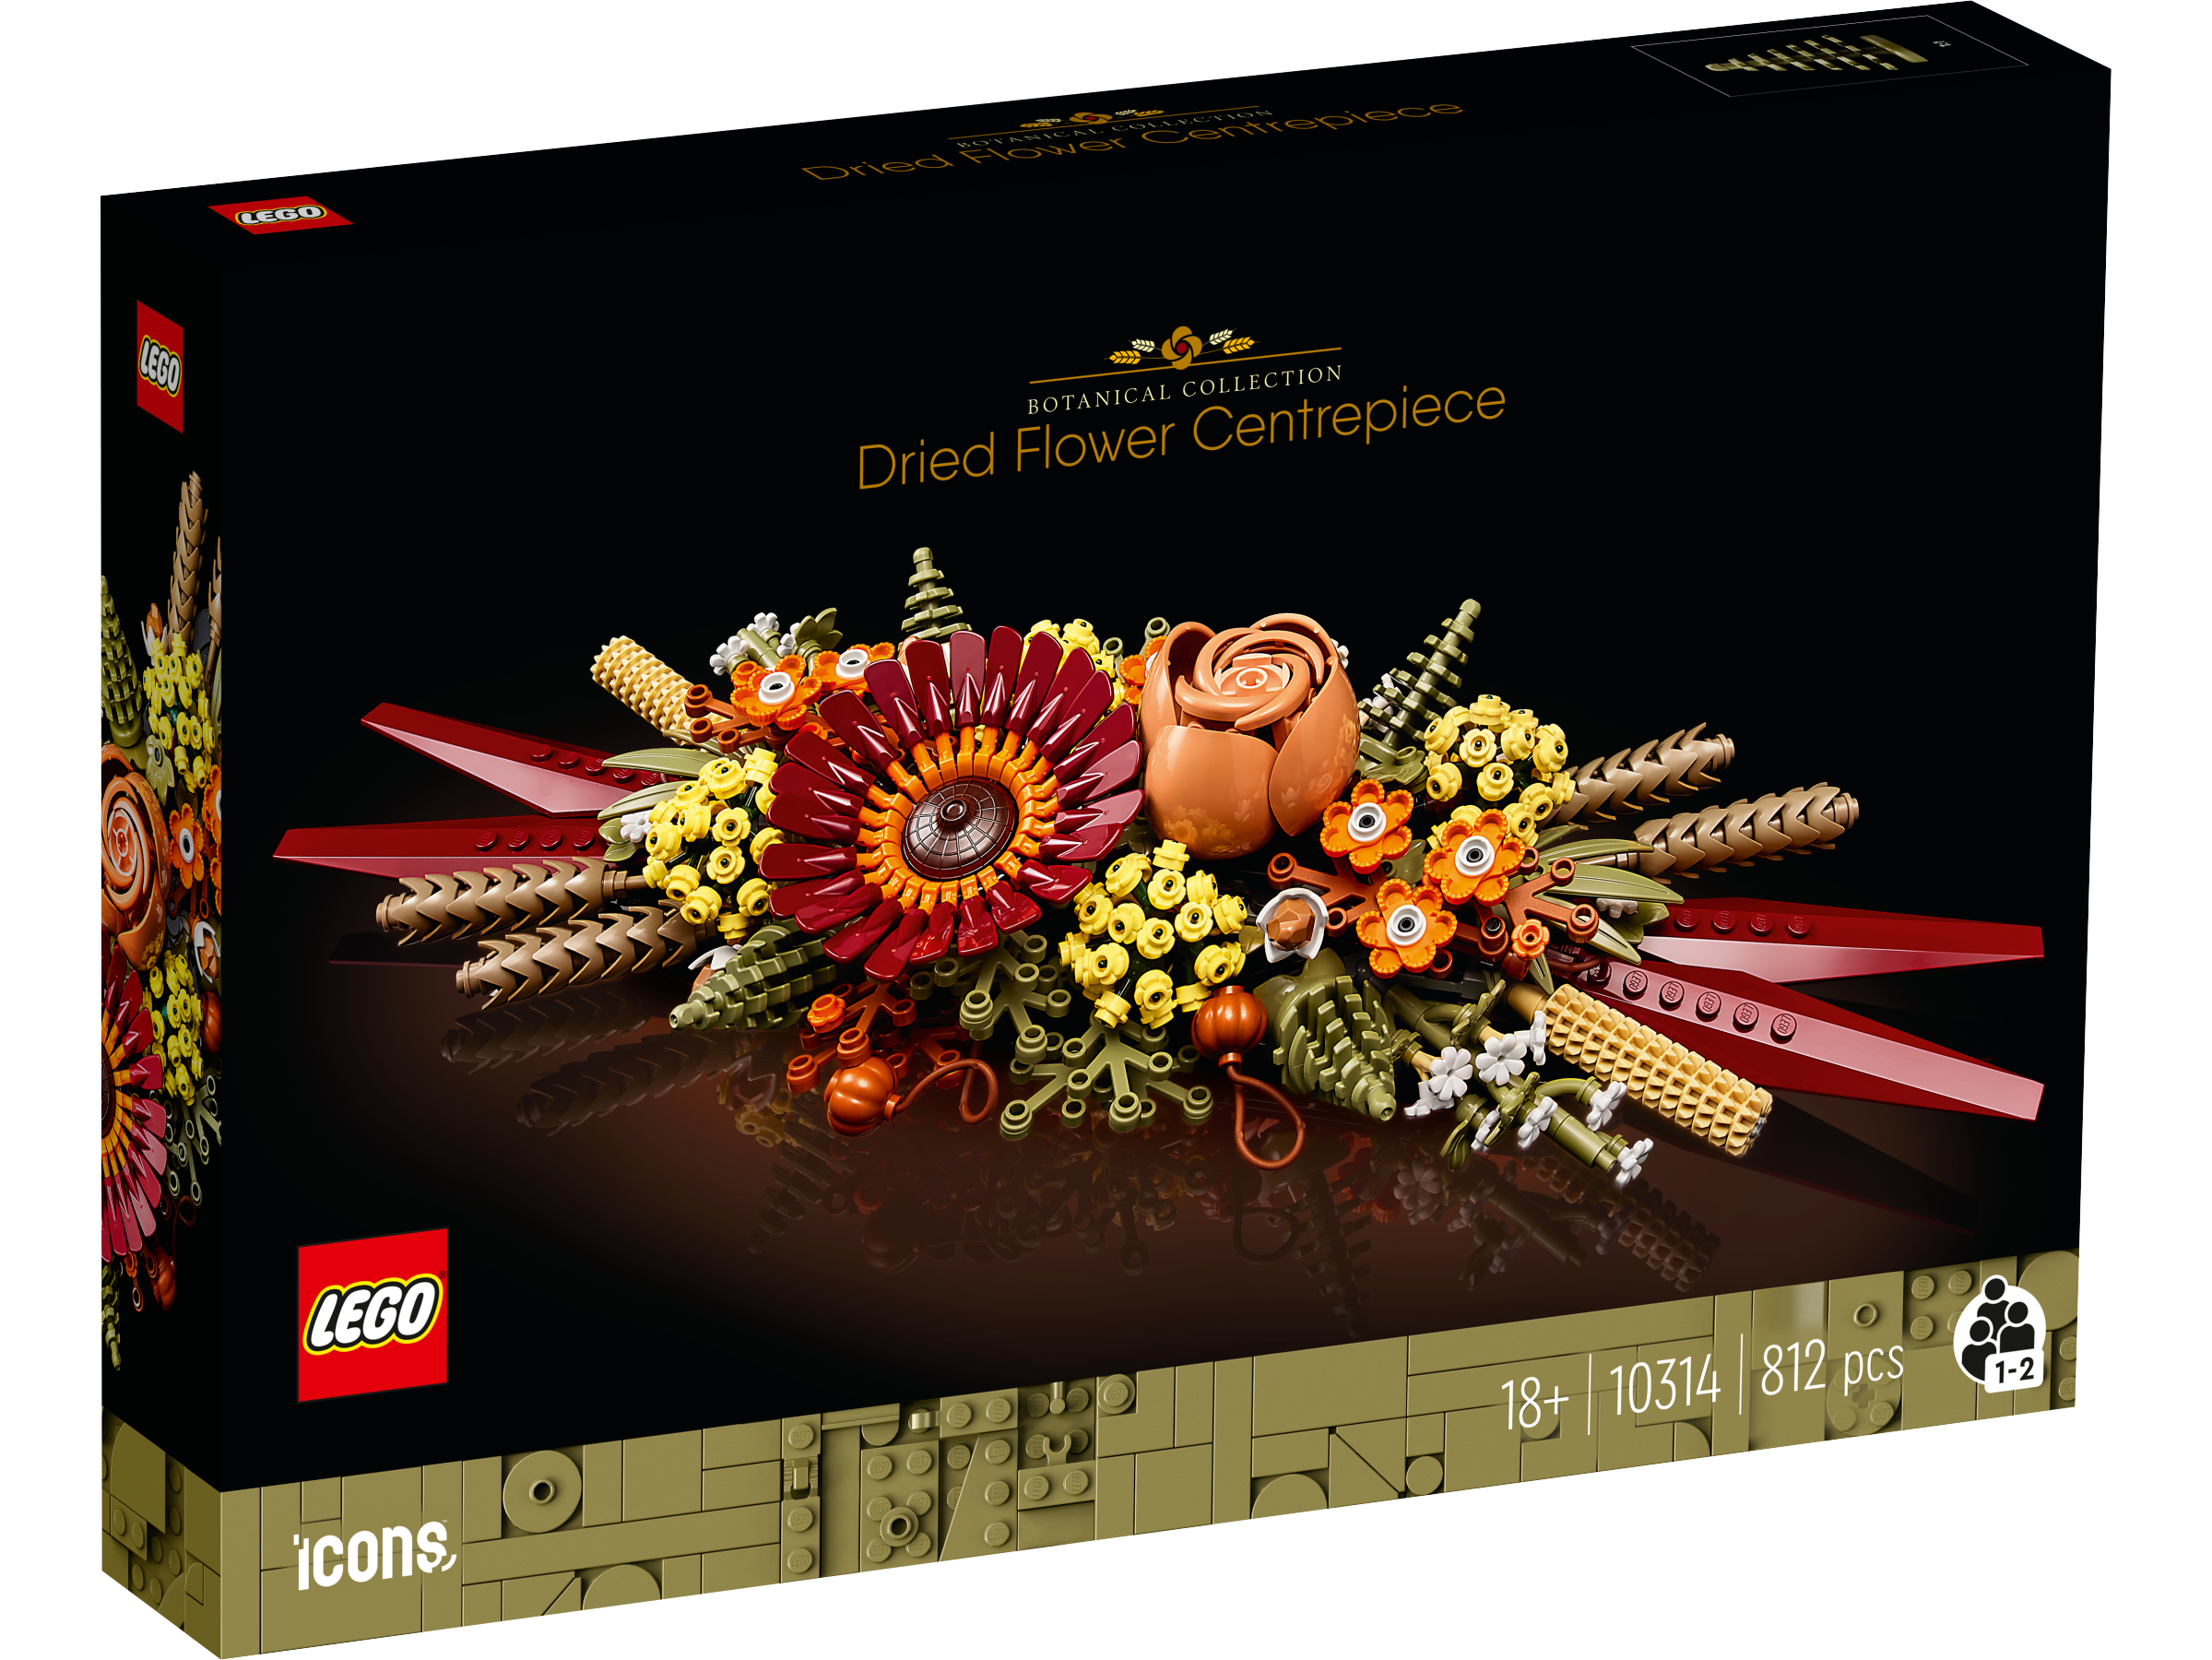 Lego 10314 Dried Flower Centerpiece